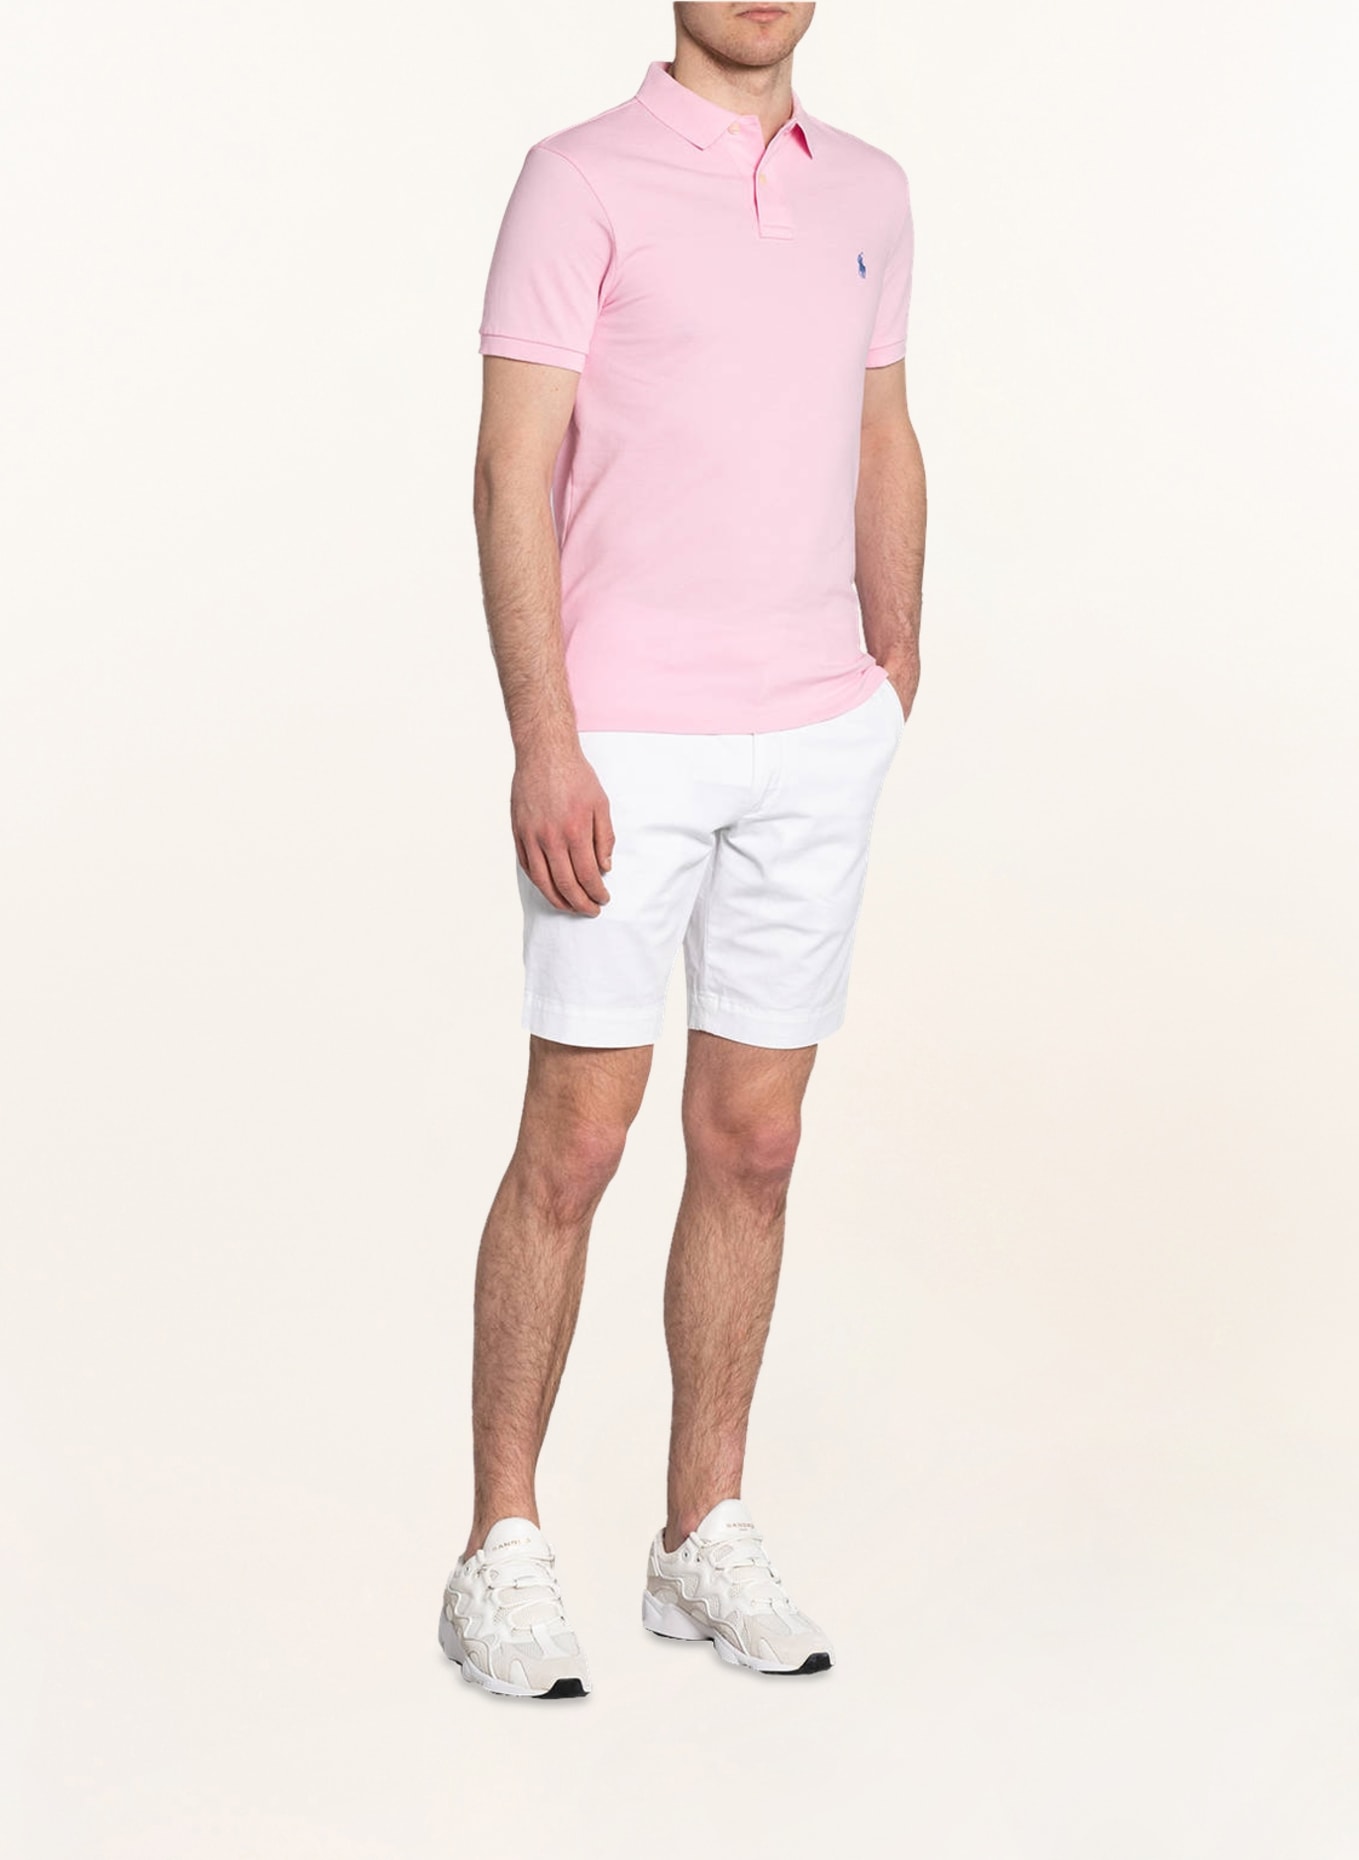 POLO RALPH LAUREN Piqué-Poloshirt Slim Fit, Farbe: ROSA (Bild 2)